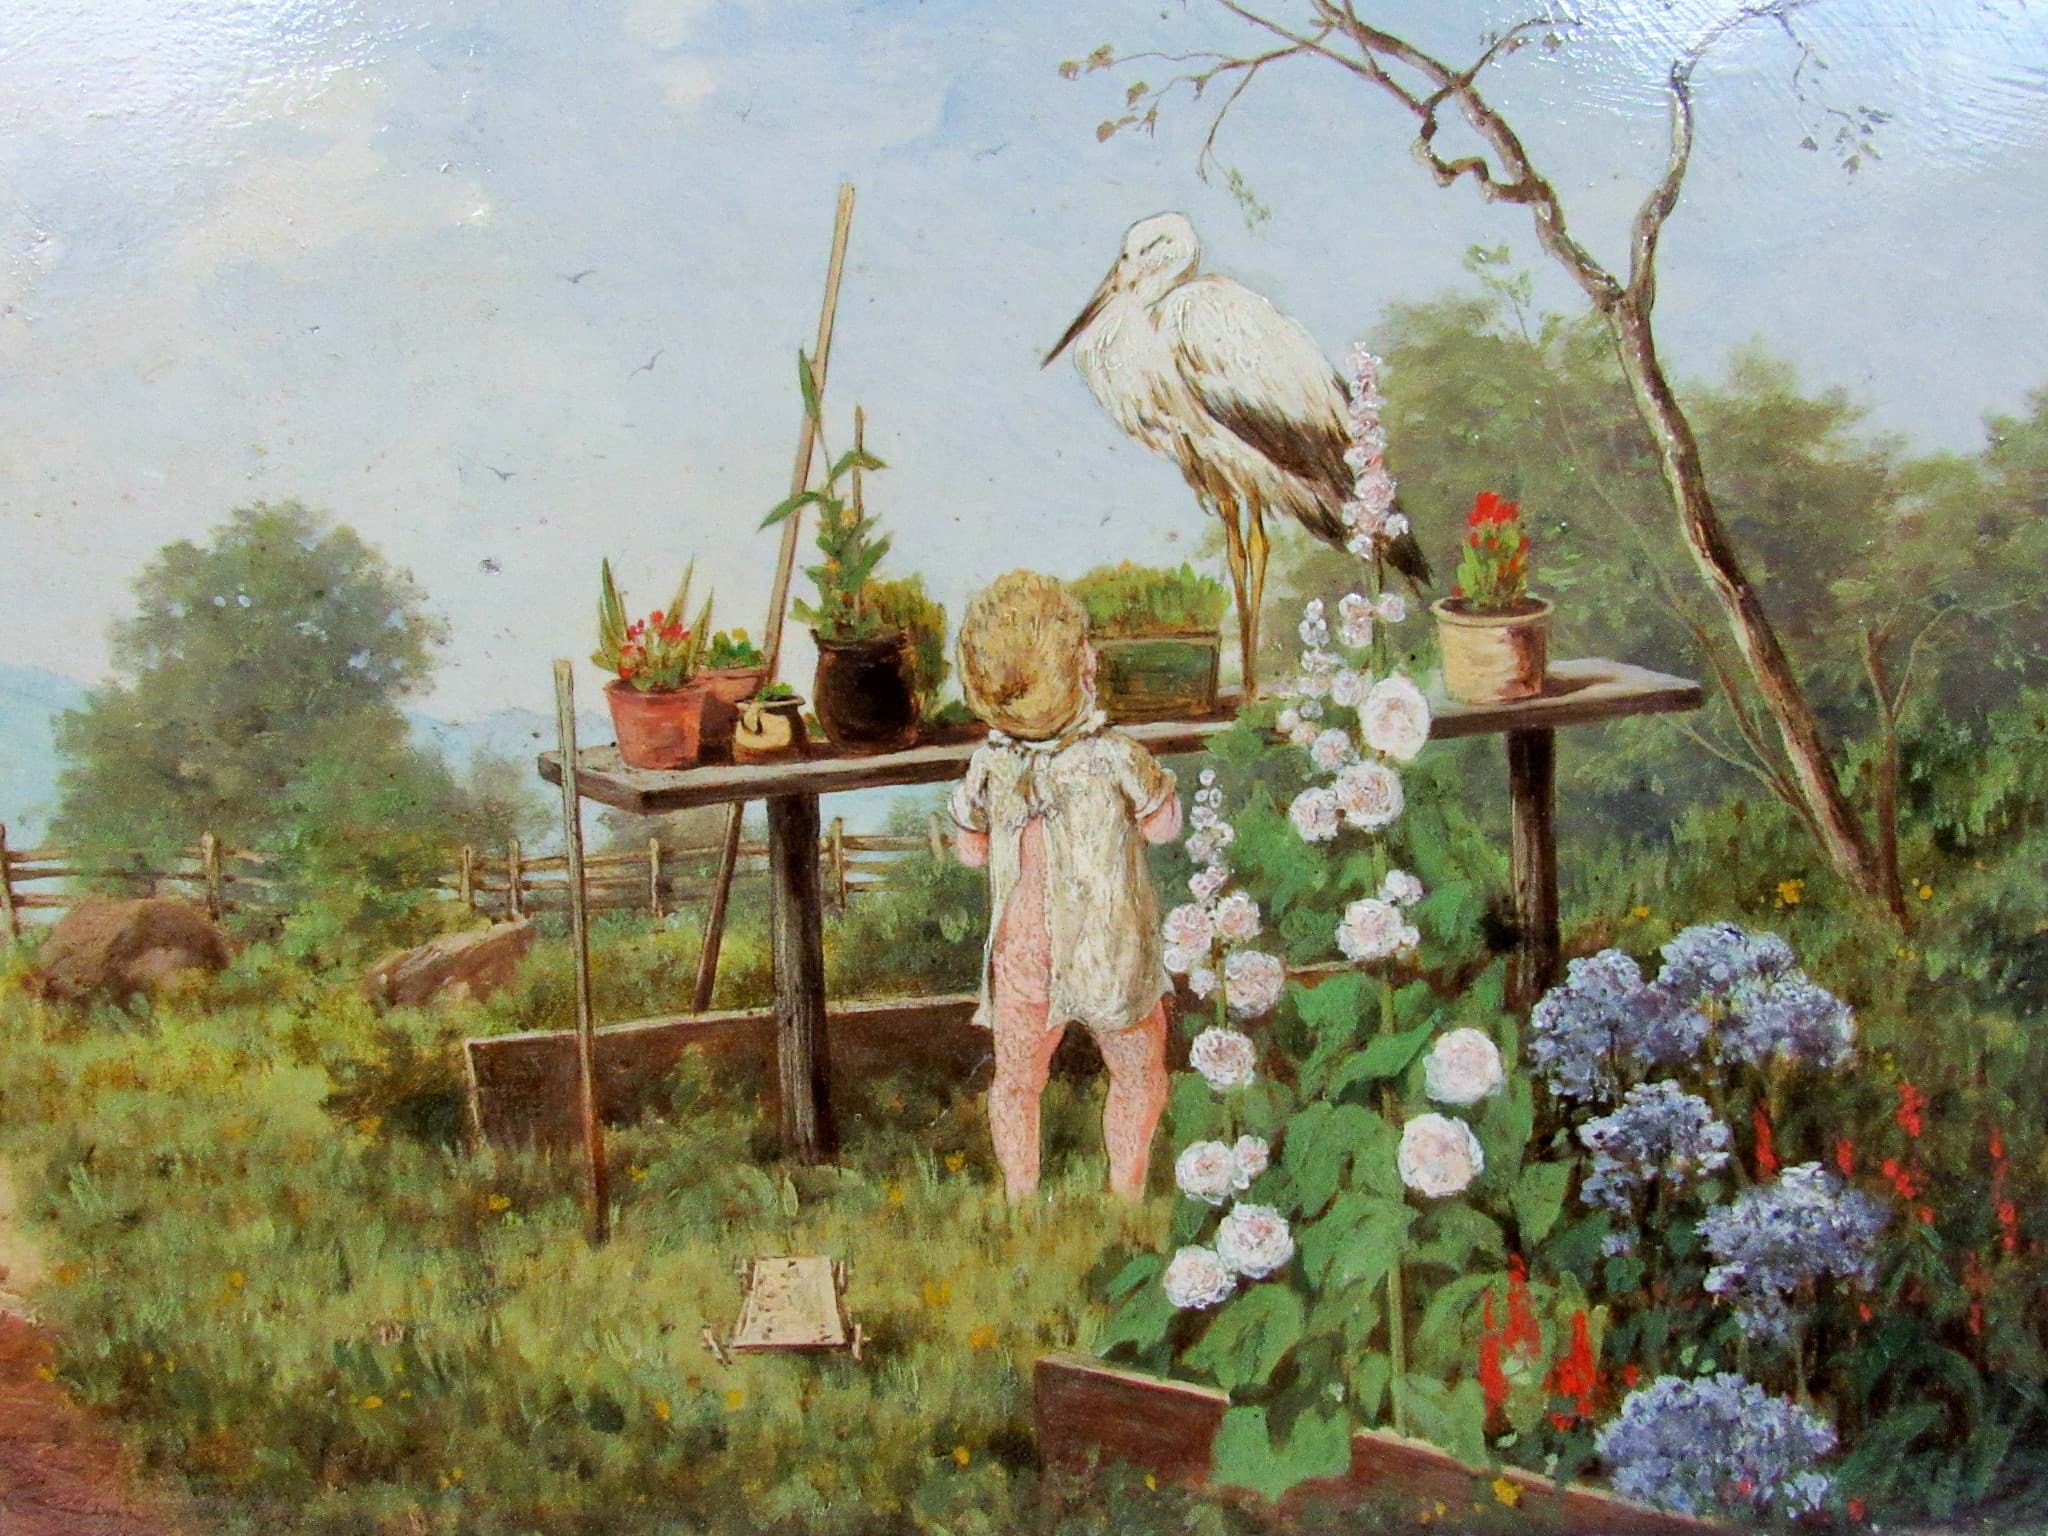 Image de T. Tessani, 1890, Gemälde / Ölbild Impressionismus, Landschaft mit liebevoller Knaben Szene - Eine Frage !, Öl/Holz